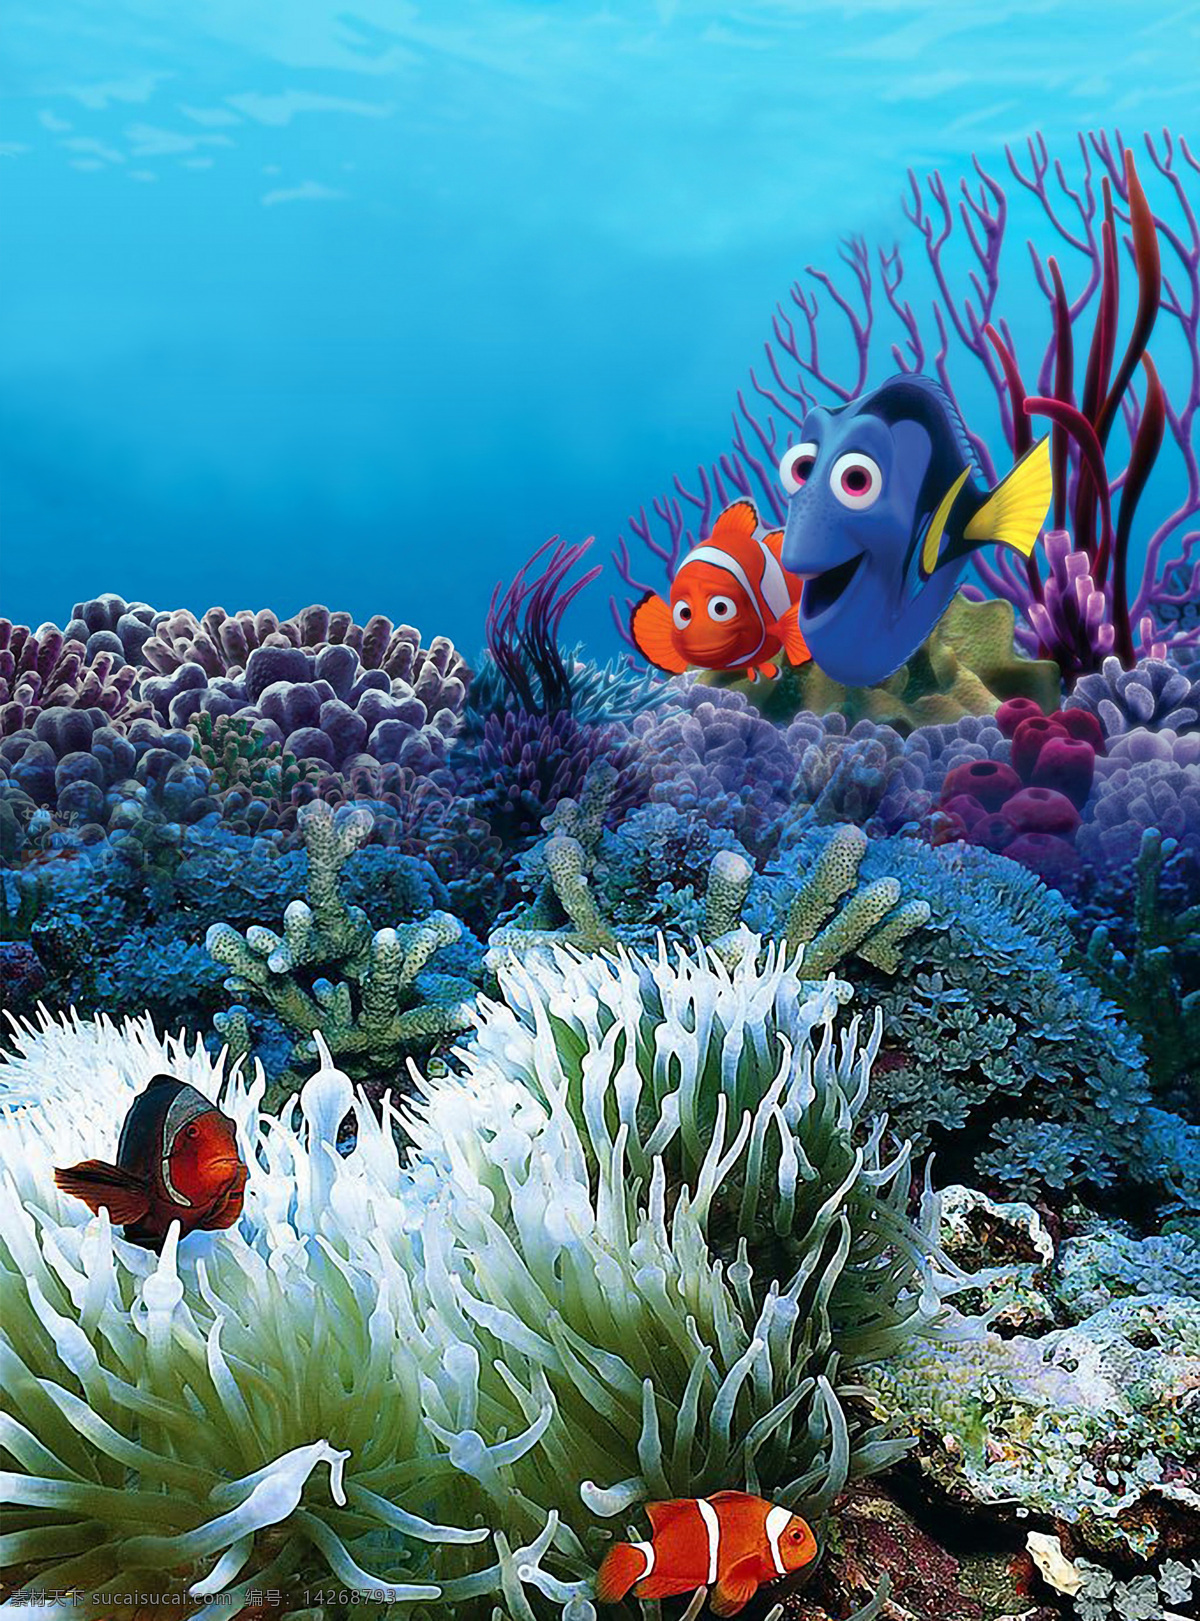 高清 海底 世界 合成 图 海底世界 自然景观 自然风光 设计图库 300